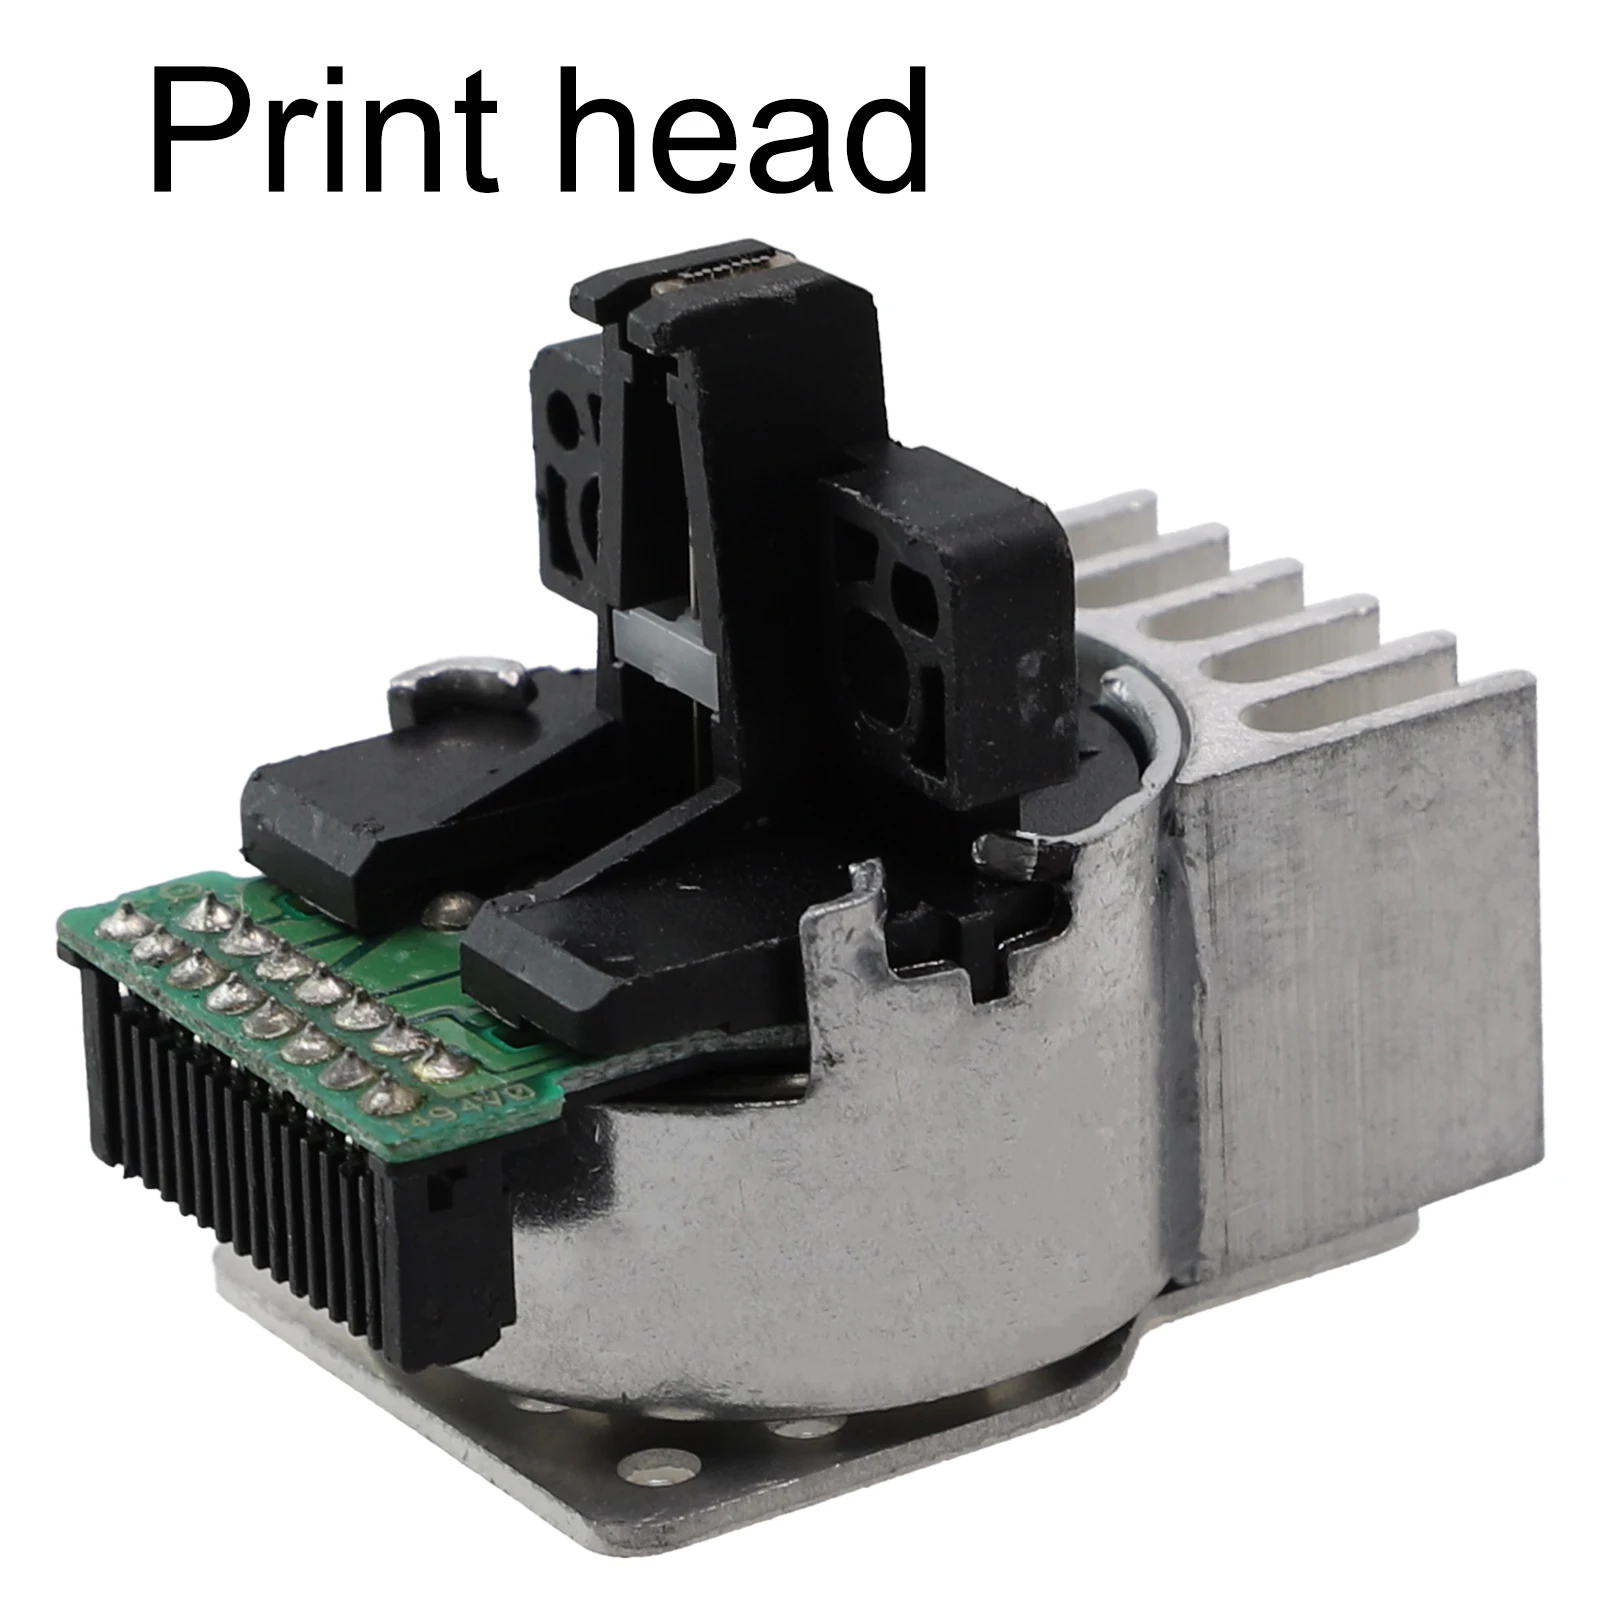 

Печатающая головка для принтера, 1235228 пикселей для Epson, Epson TMU220, быстрая печать, чековый принтер для офисных принадлежностей